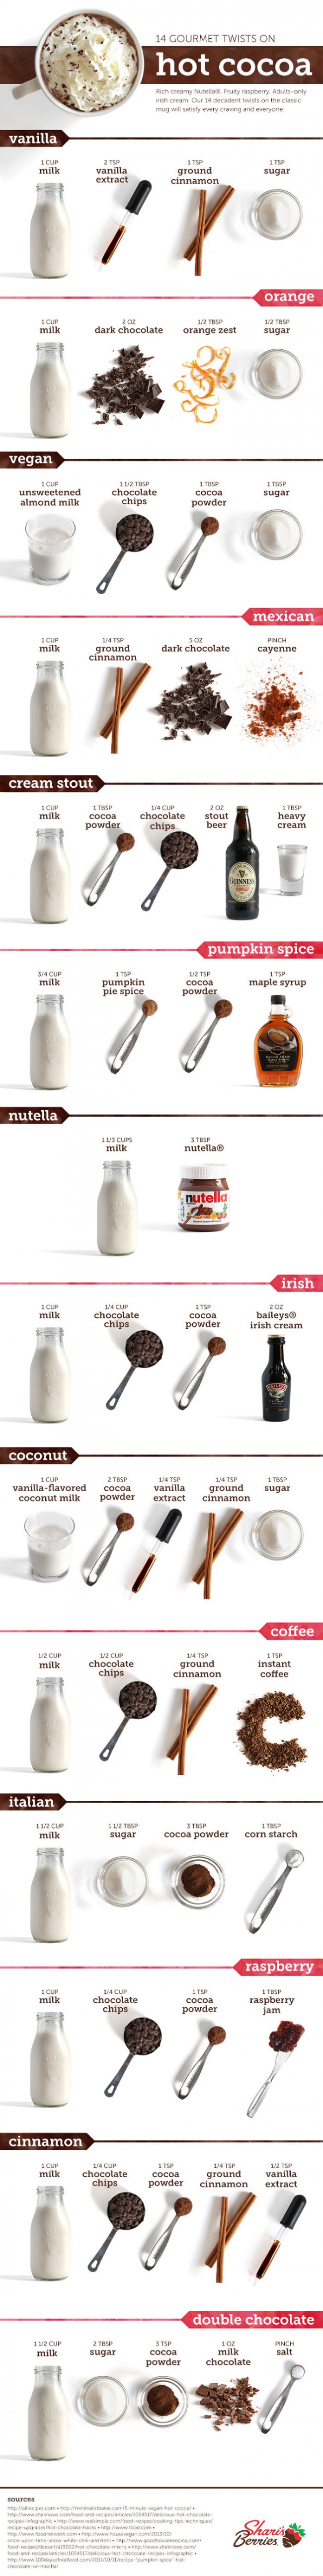 14 вкусни рецепти за горещ шоколад (инфографика)